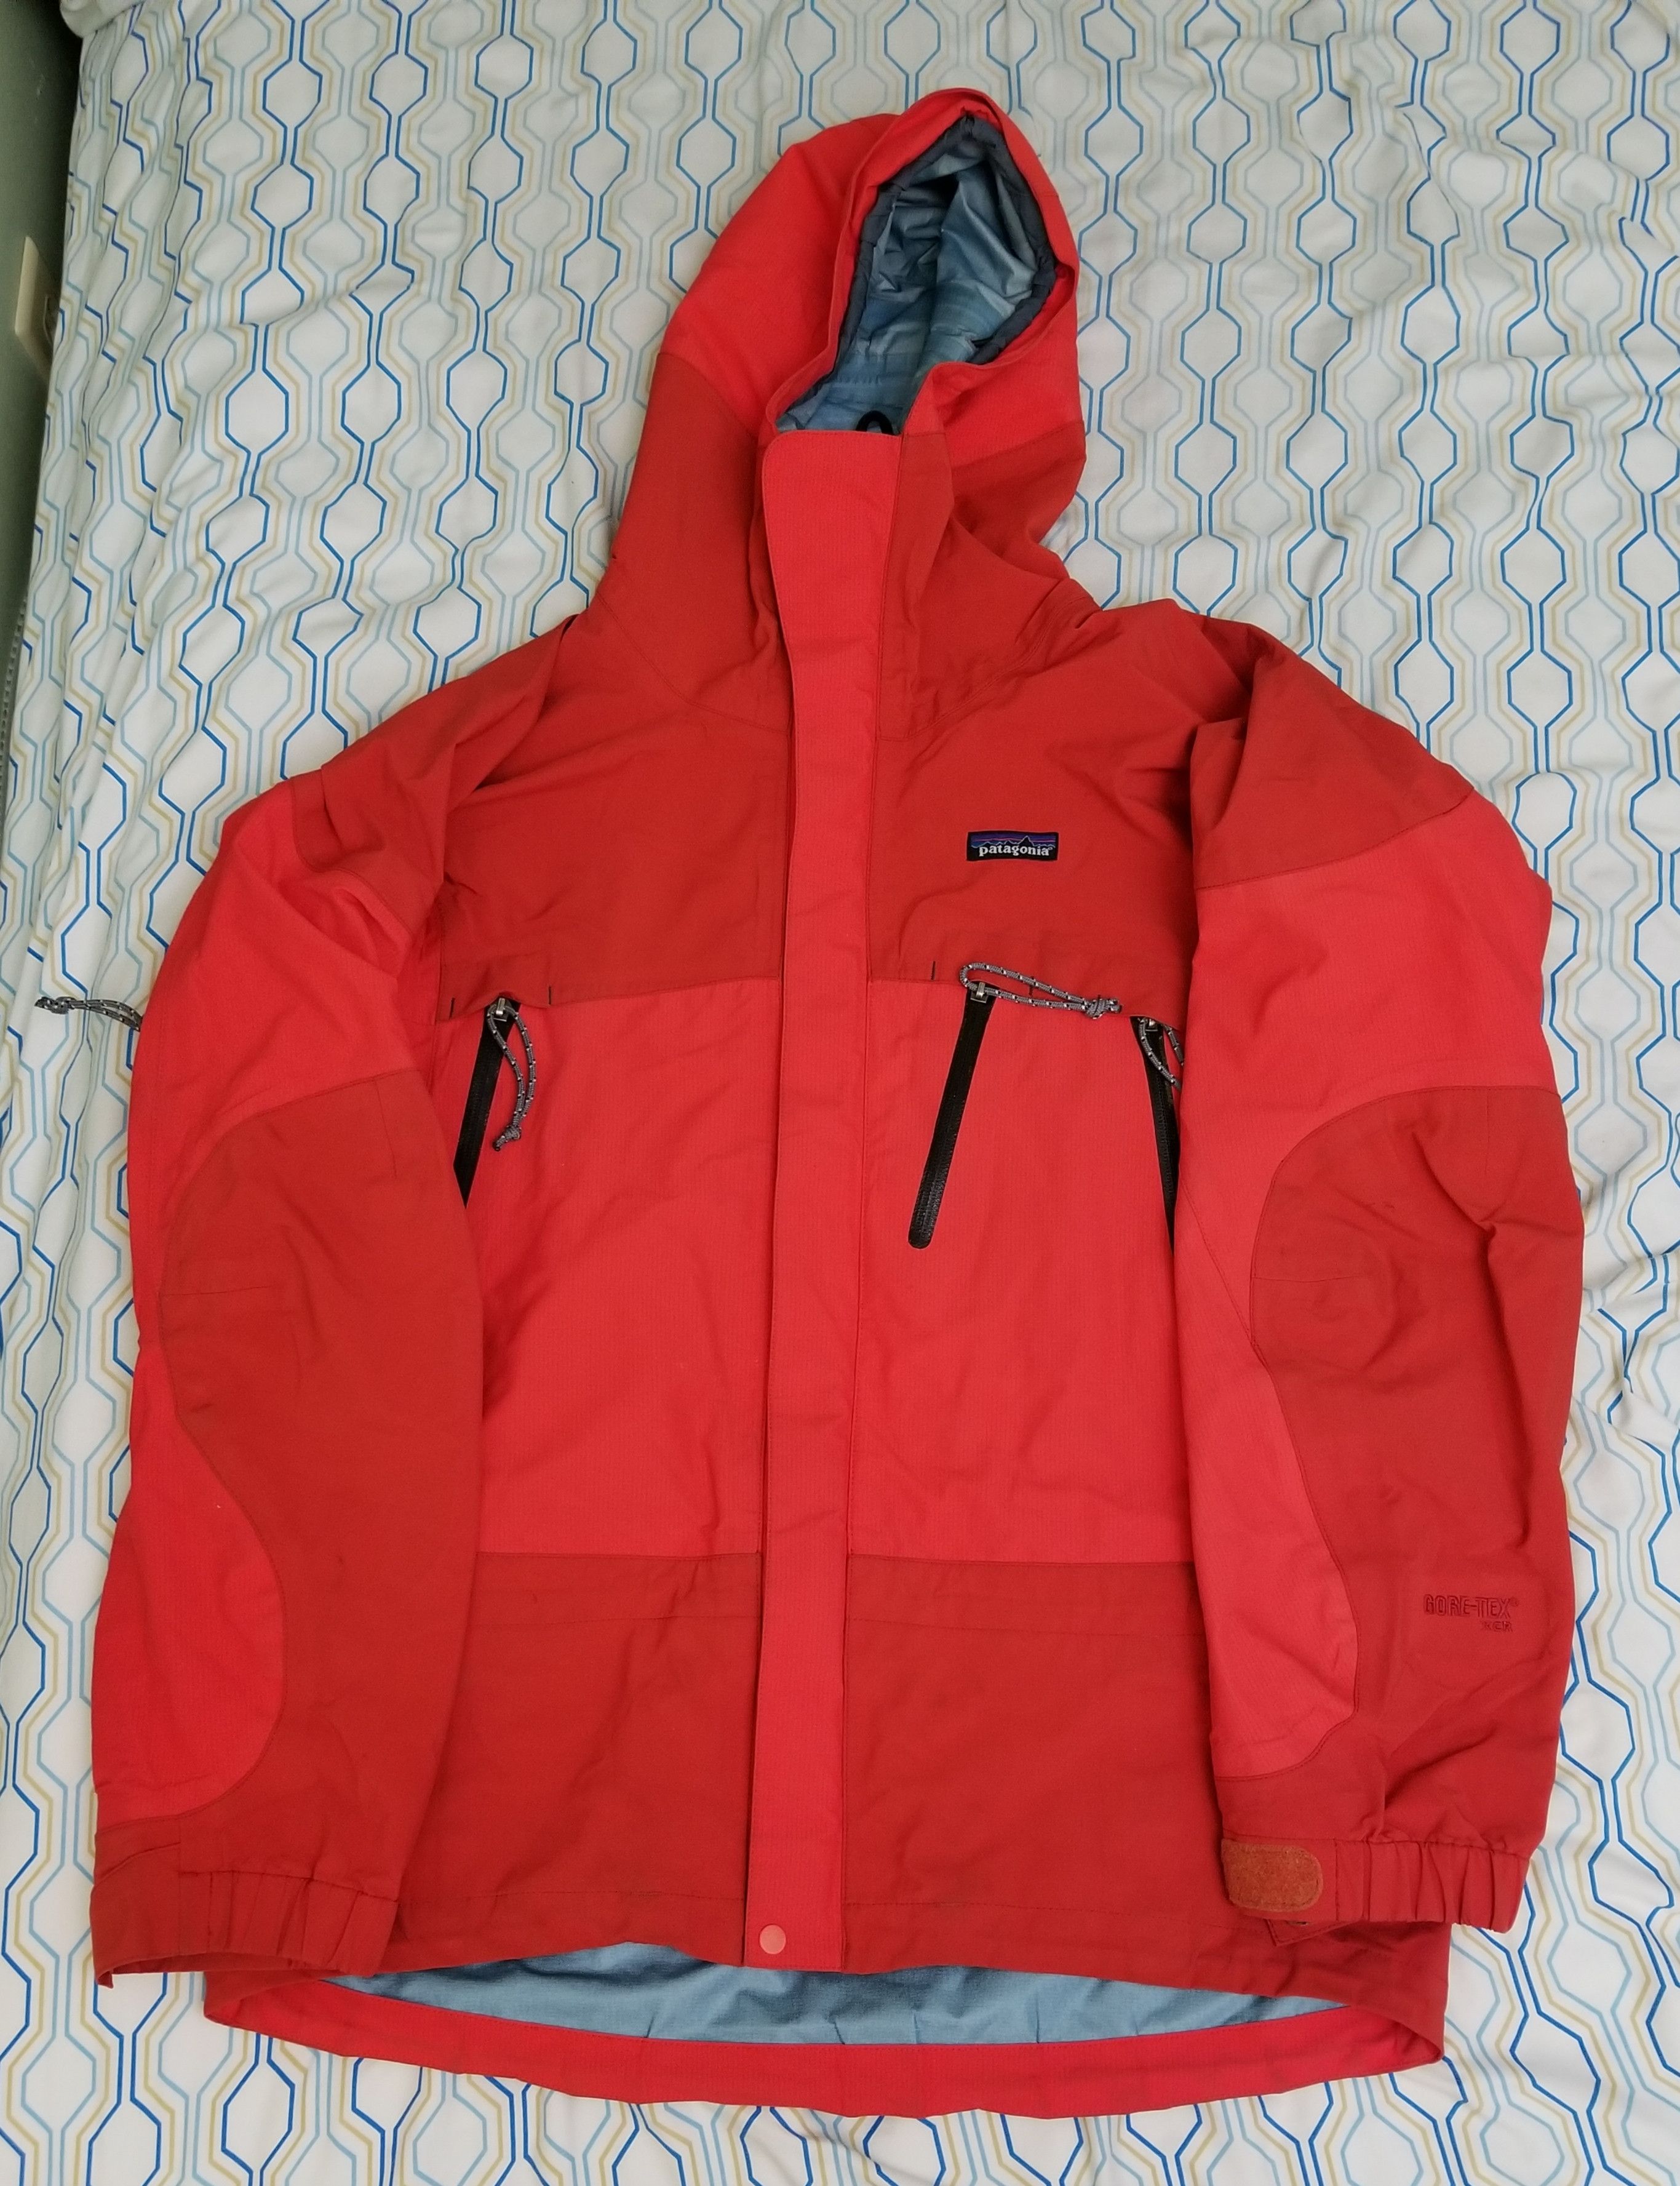 Vintage Vintage Patagonia Ice Nine XCR Goretex Jacket Orange Red ...